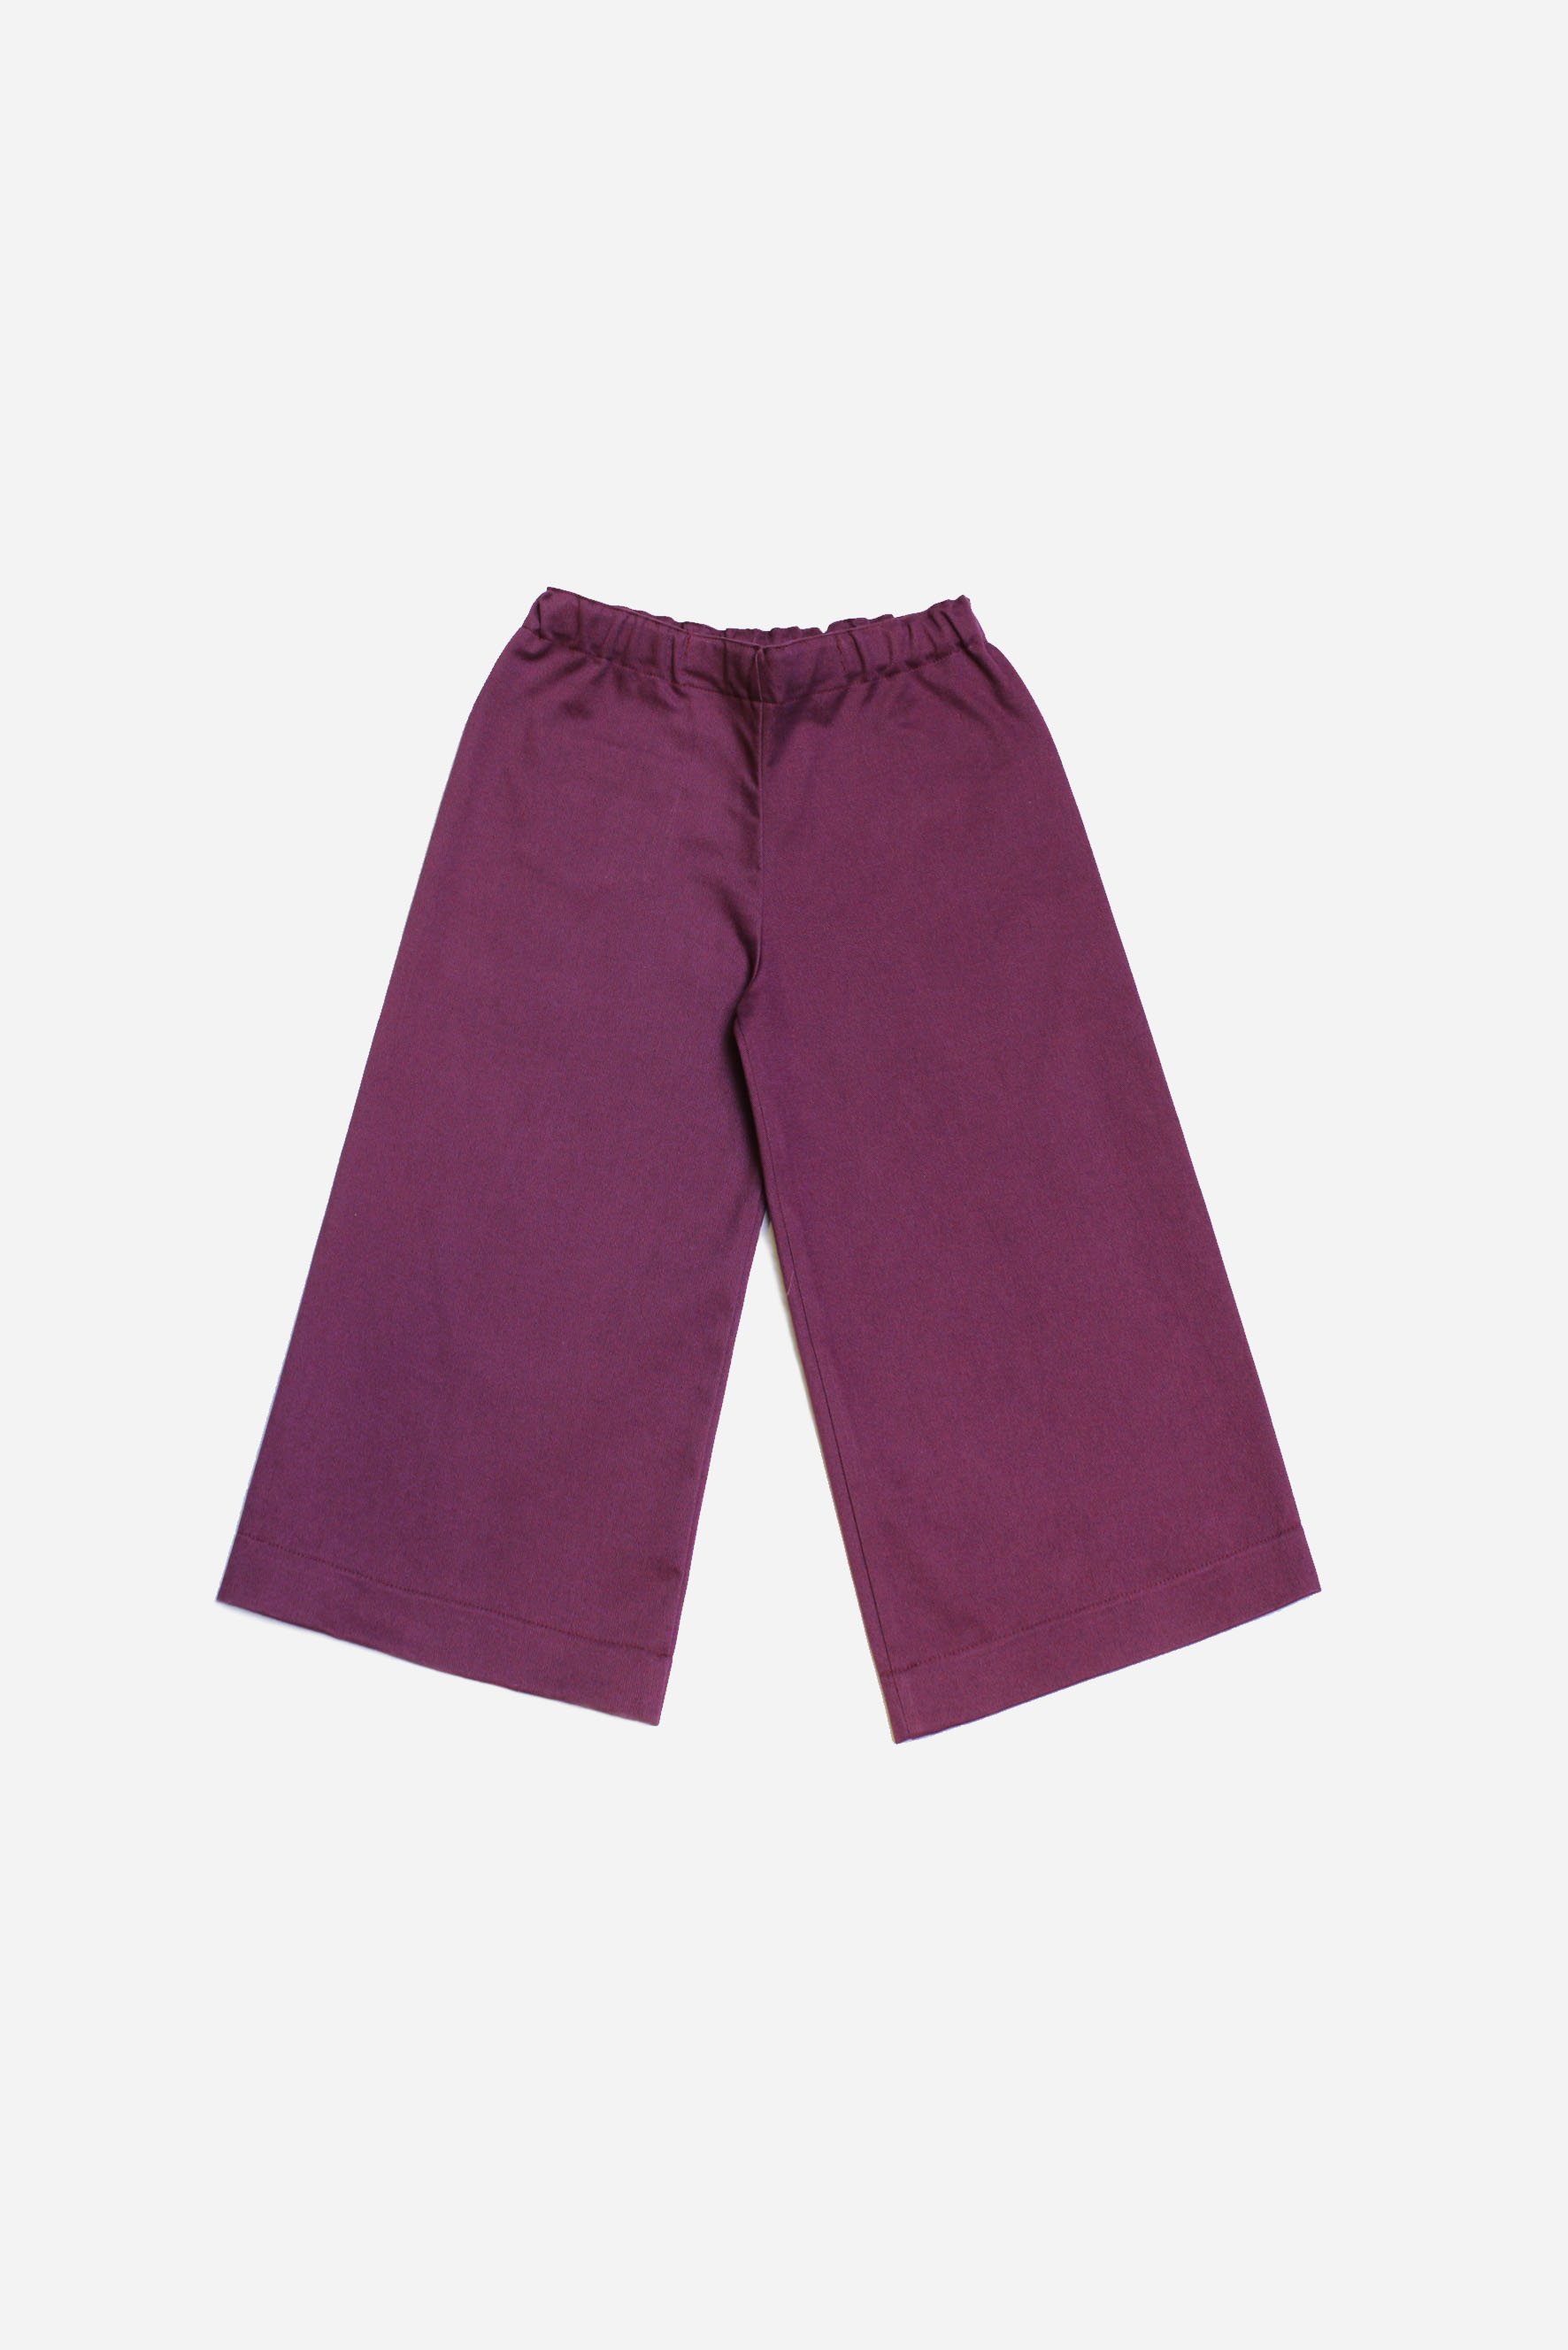 pantaloni viola.jpg